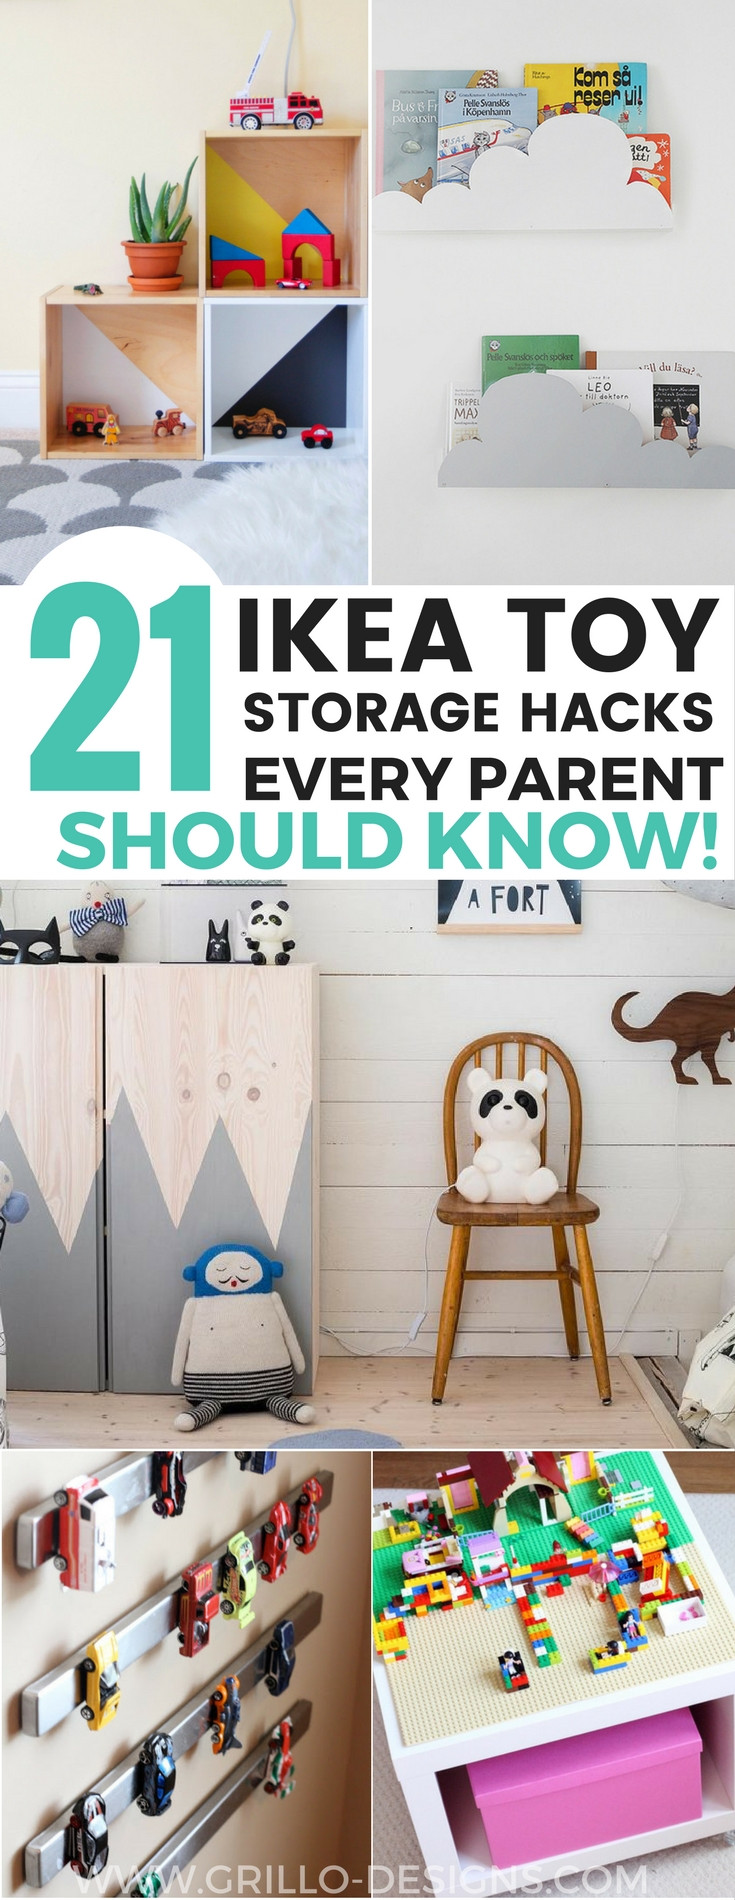 Ikea Kids Toy Storage
 21 IKEA Toy Storage Hacks Every Parent Should Know